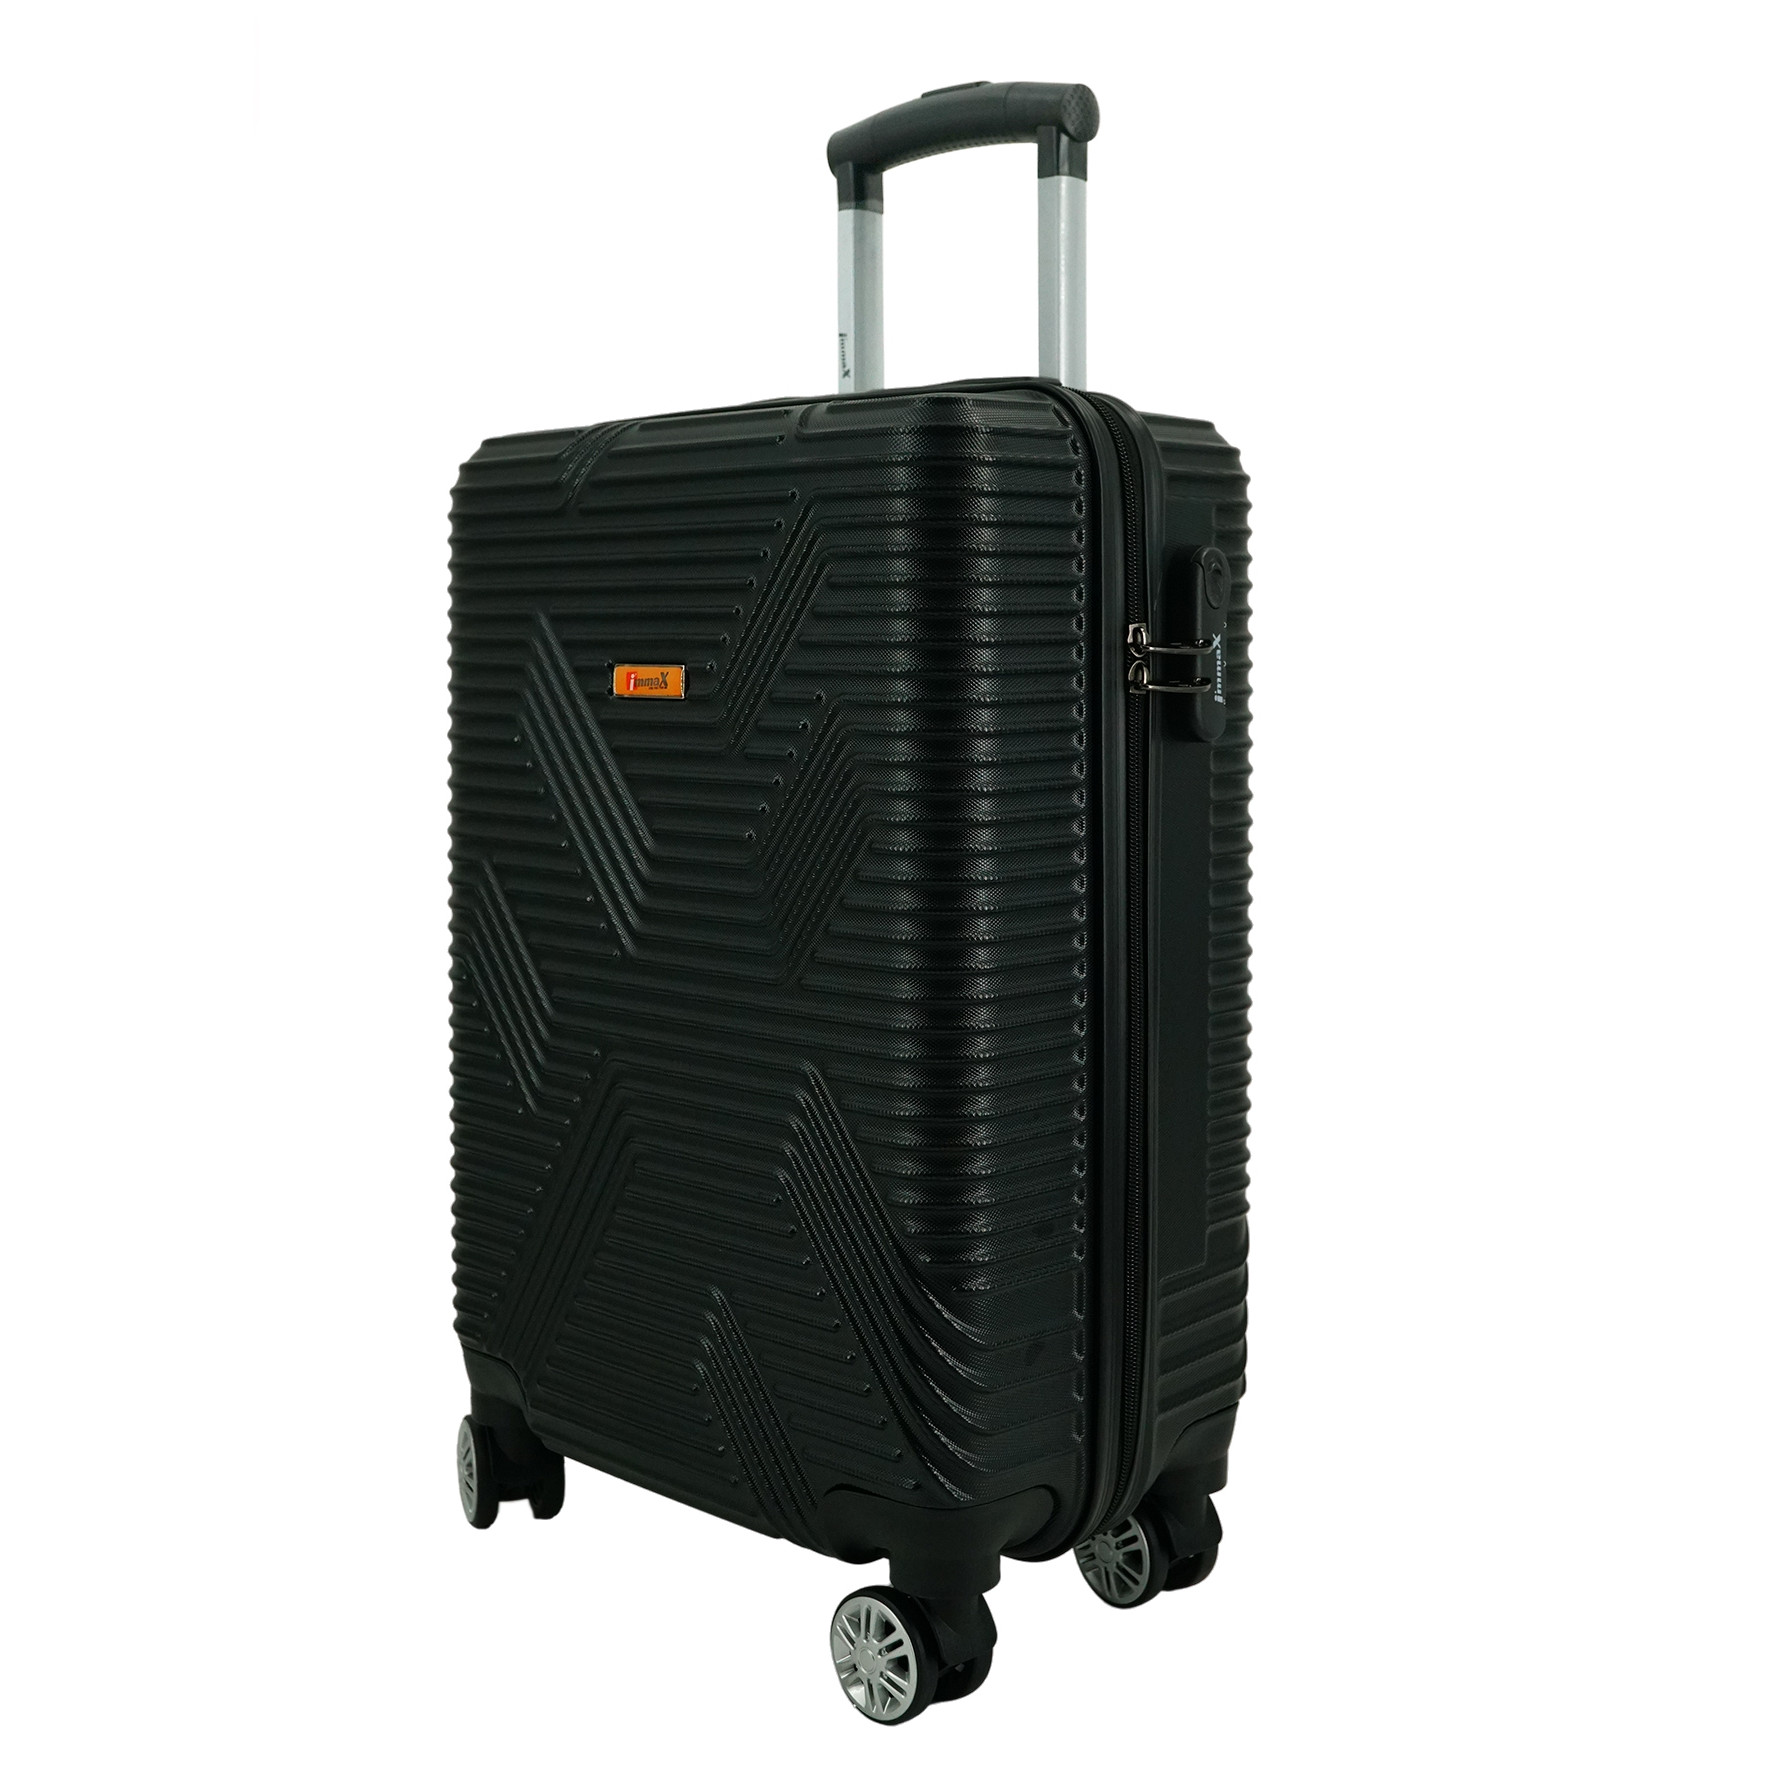 Vali du lịch size ký gửi hành lý 24inch i'mmaX X11